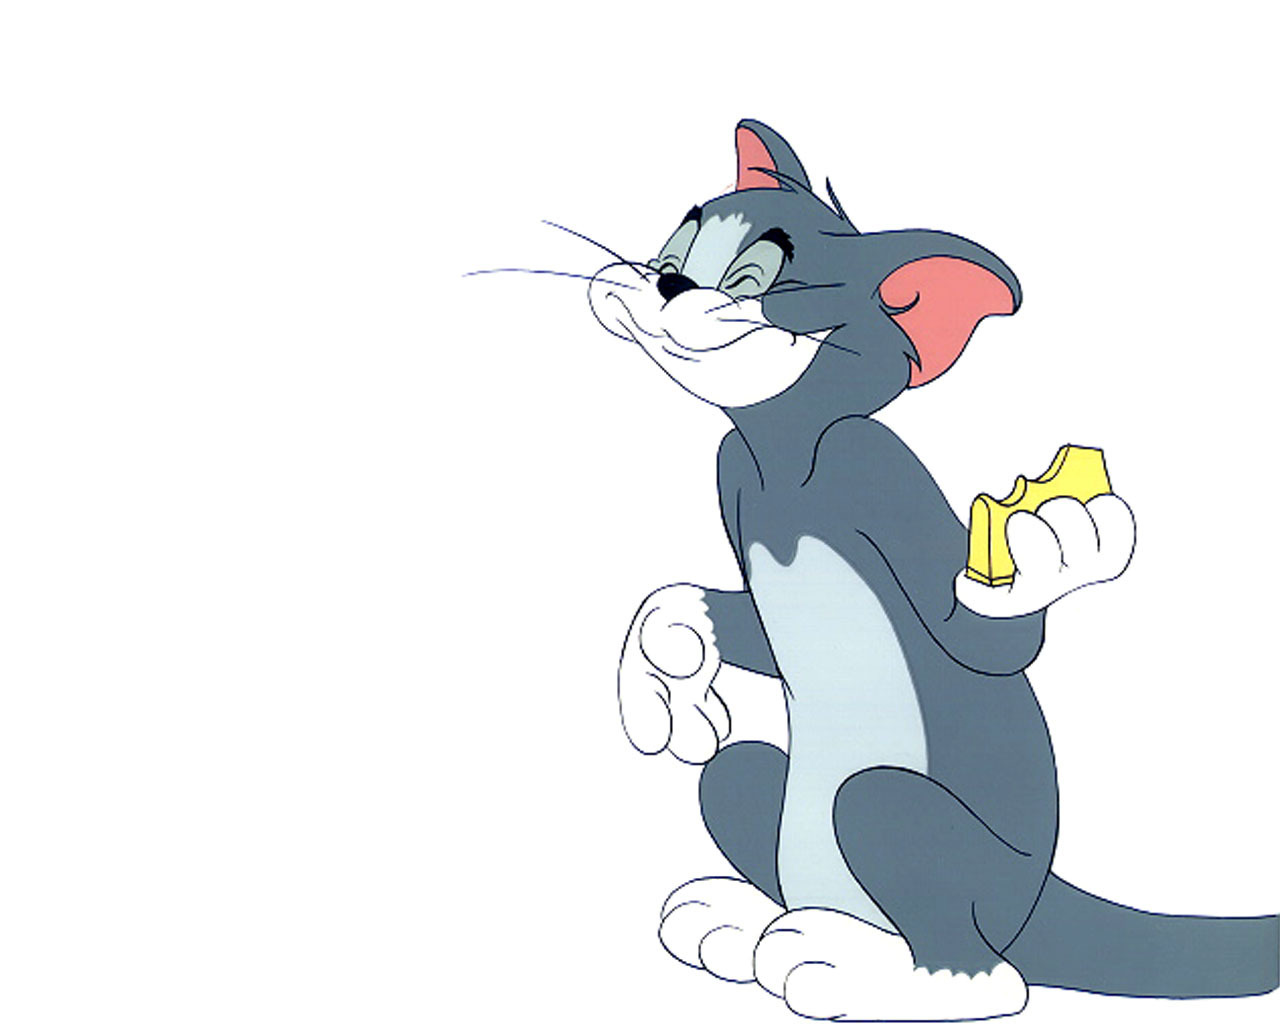 Игр й том. Tom i Jerry. Джерри из том и Джерри. Том из том и Джерри в полный рост.